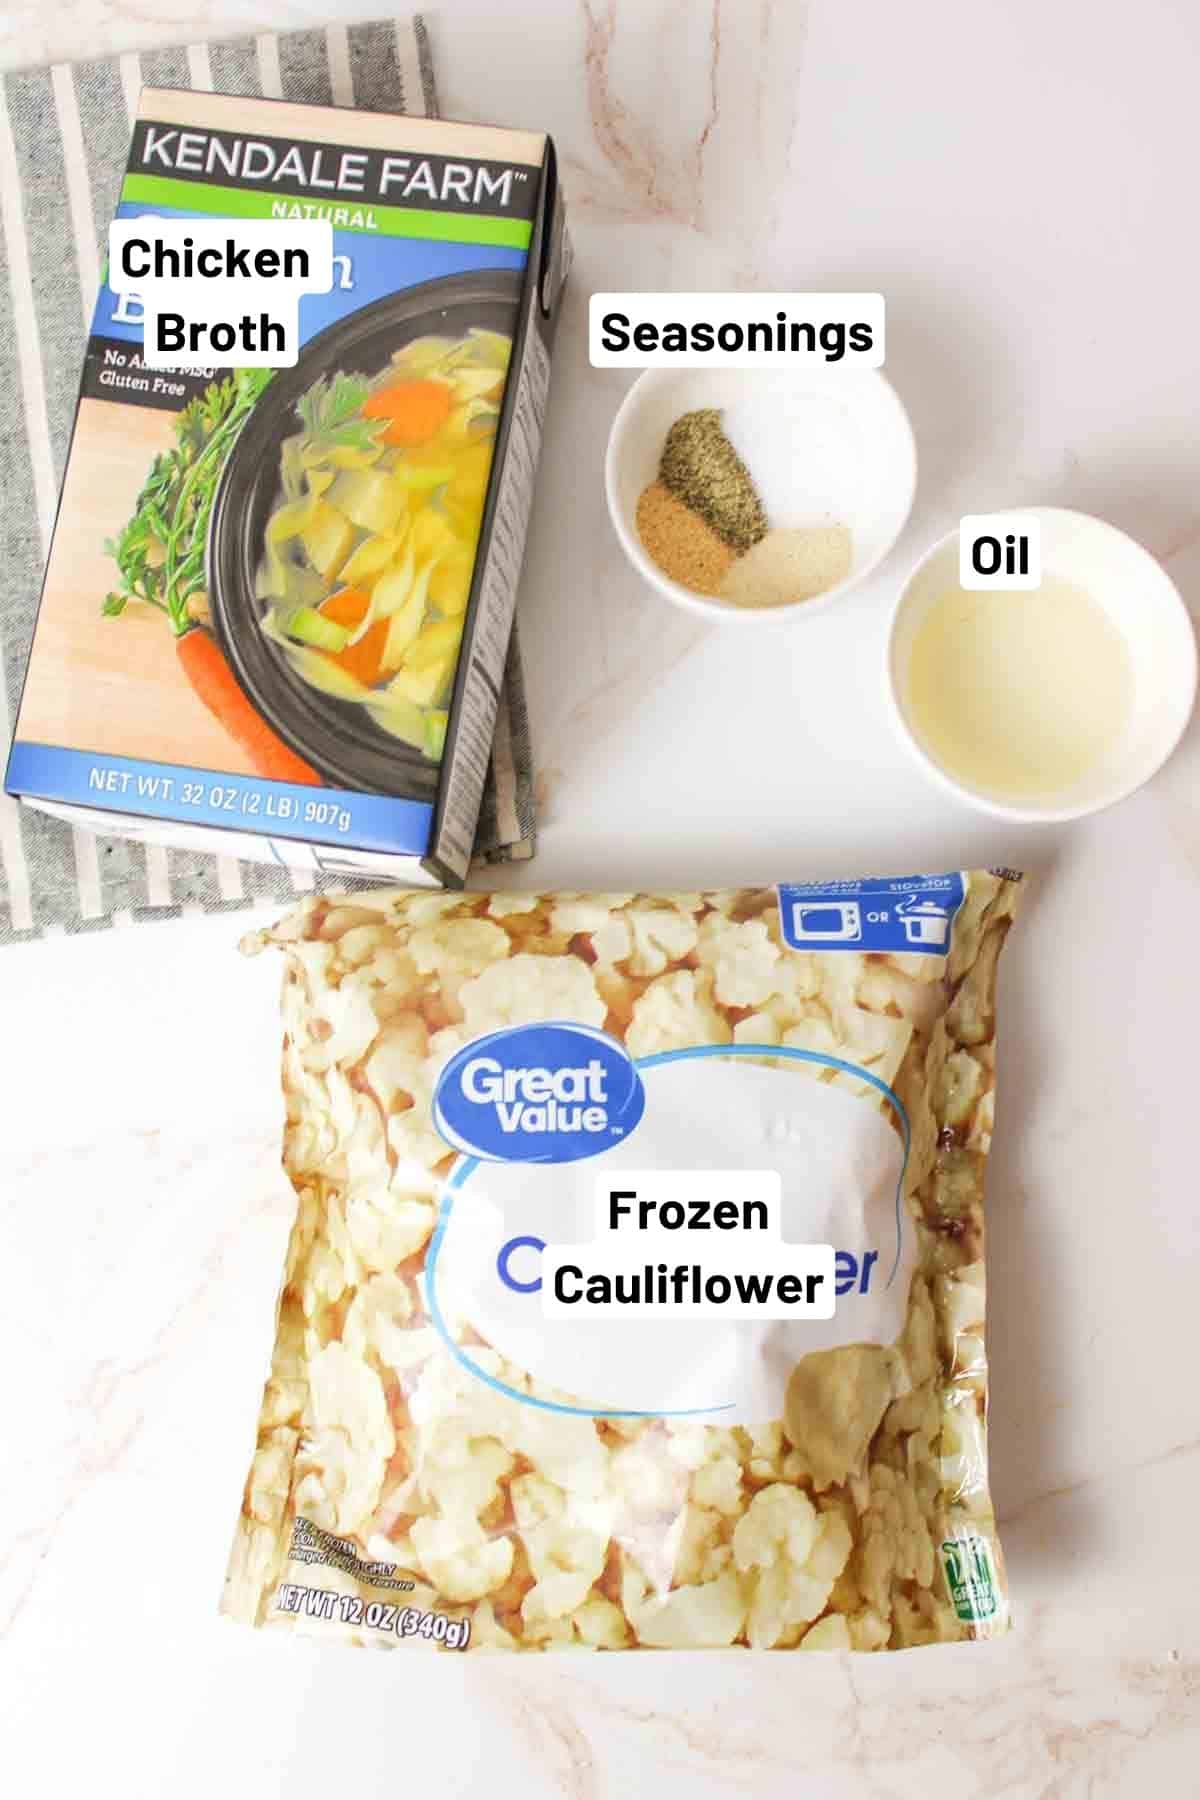 ingredients needed to make roasted frozen cauliflower.